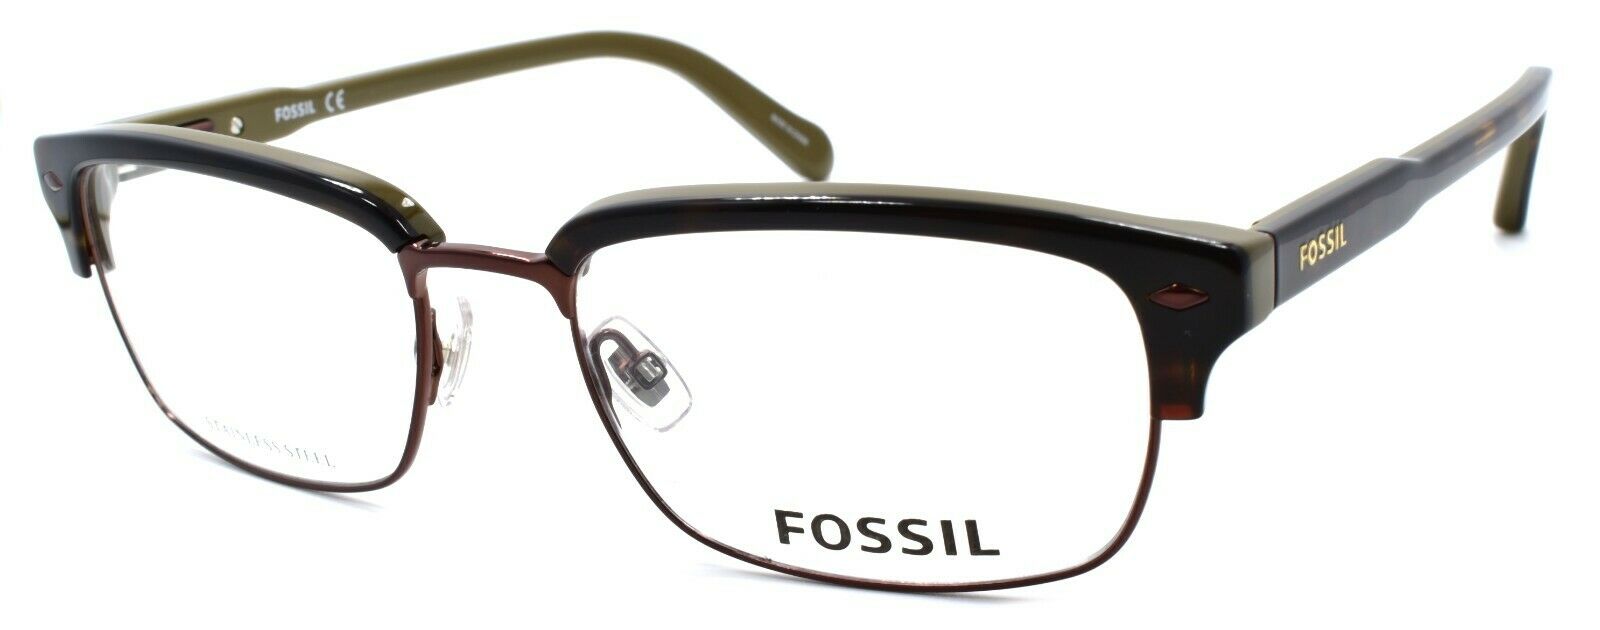 1-Fossil FOS 6050 1L3 Men's Eyeglasses Frames 54-18-145 Havana / Khaki-716737698174-IKSpecs